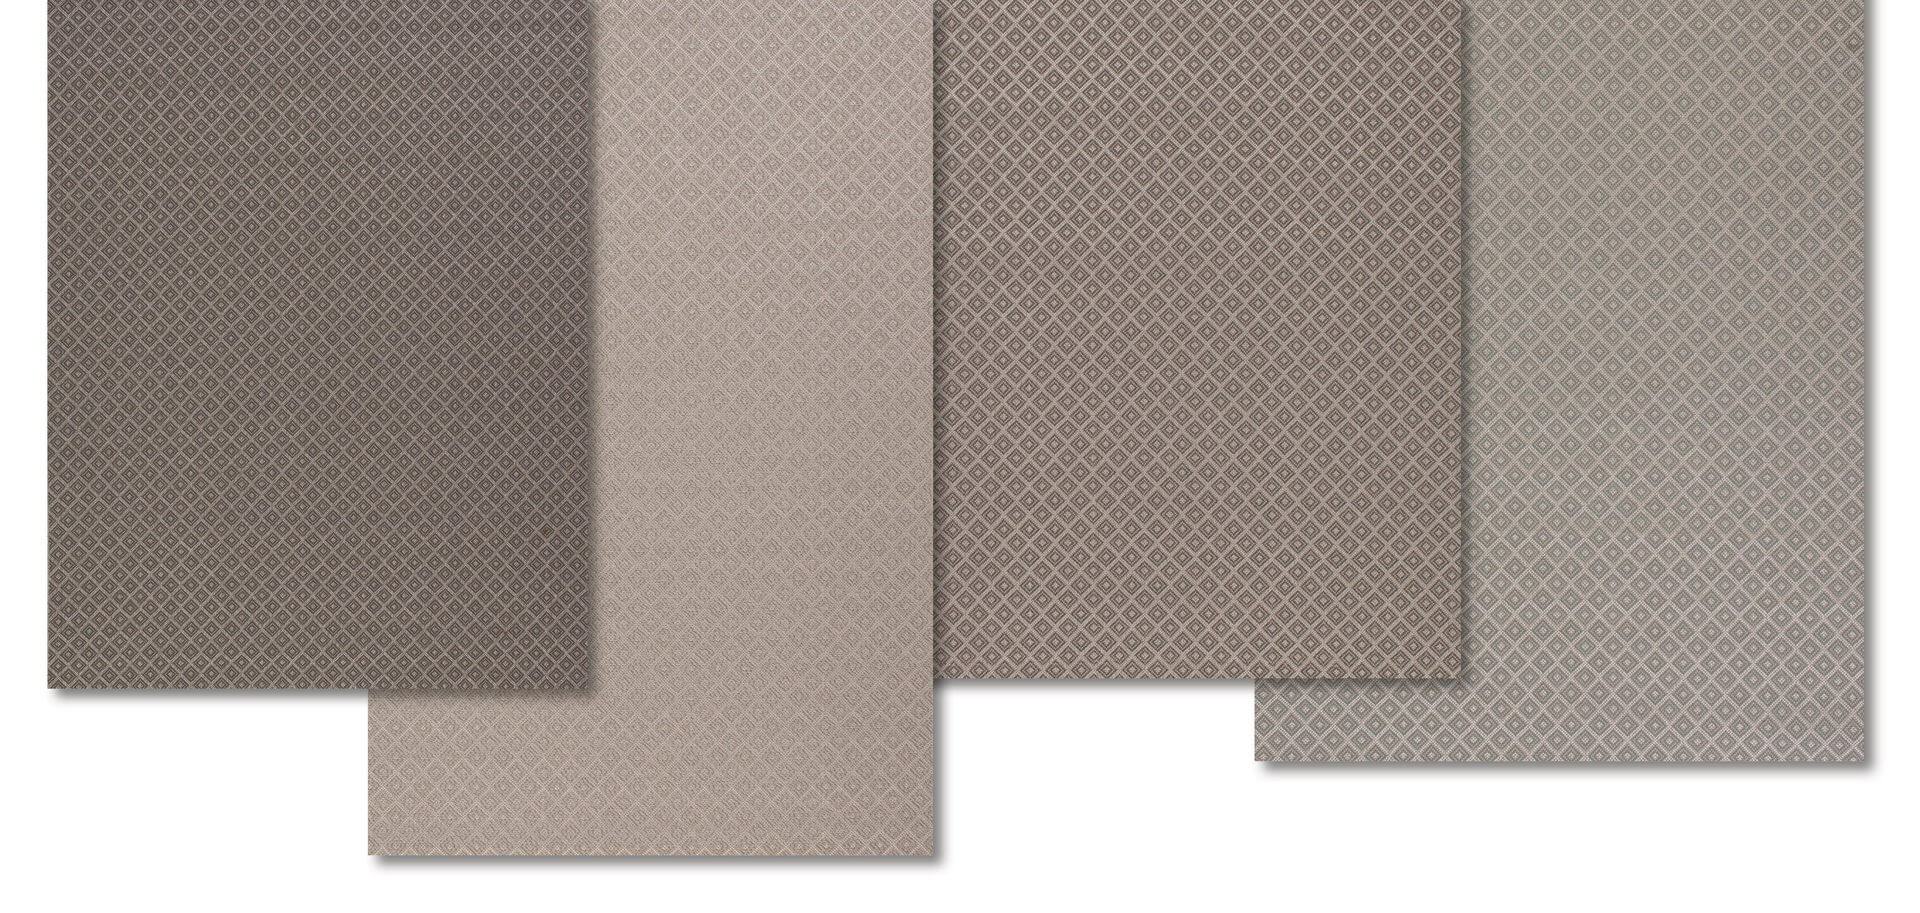 Musterring - Freilicht Nordic Teppich,  80x 180 cm